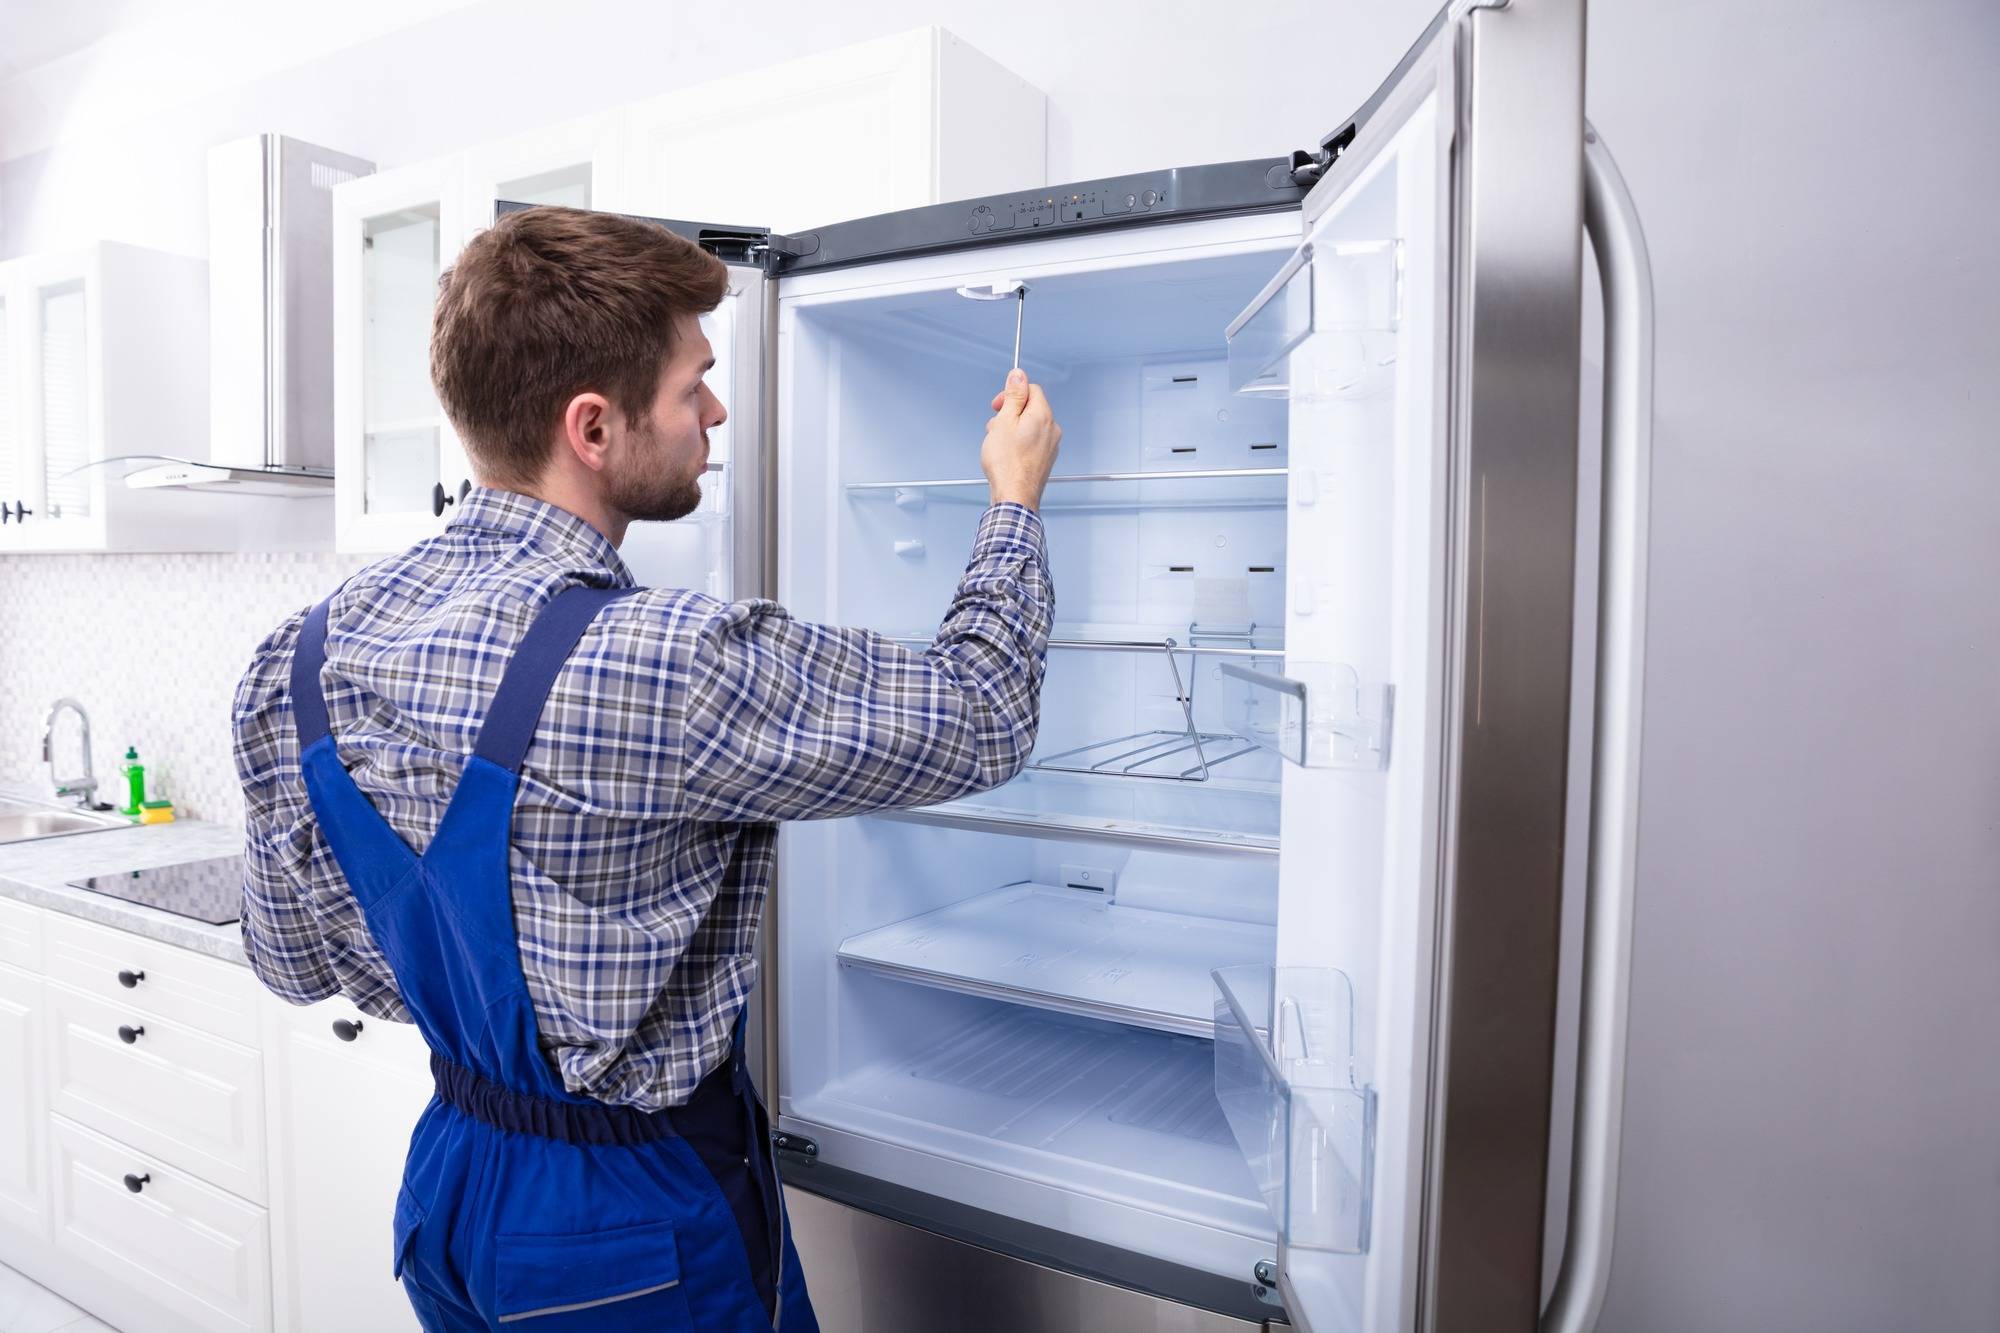 Неисправности холодильников